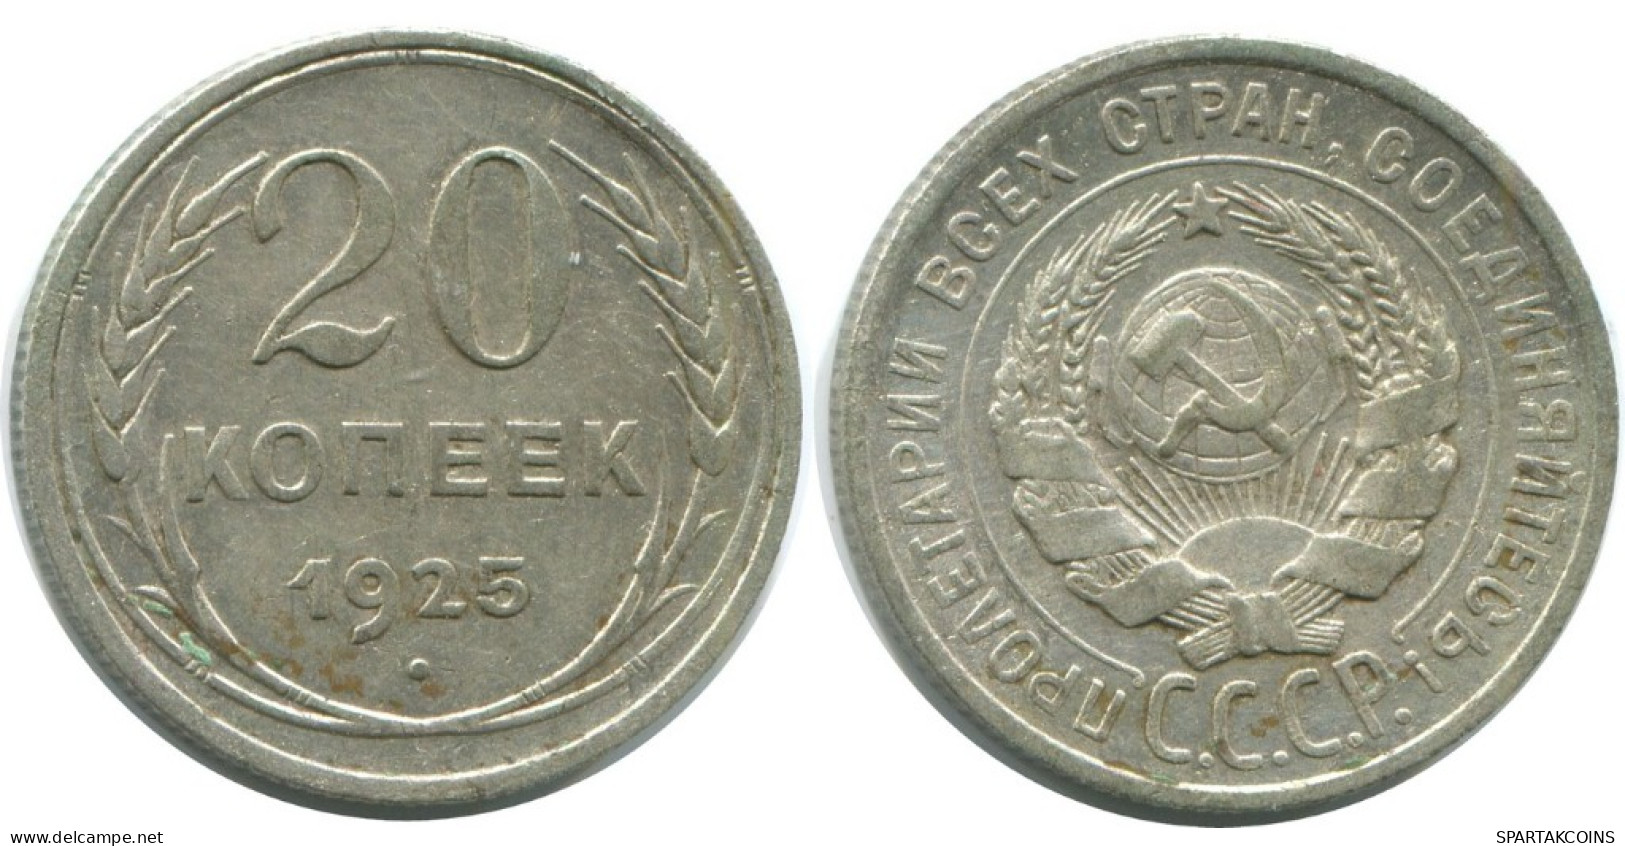 20 KOPEKS 1925 RUSSLAND RUSSIA USSR SILBER Münze HIGH GRADE #AF321.4.D.A - Russland